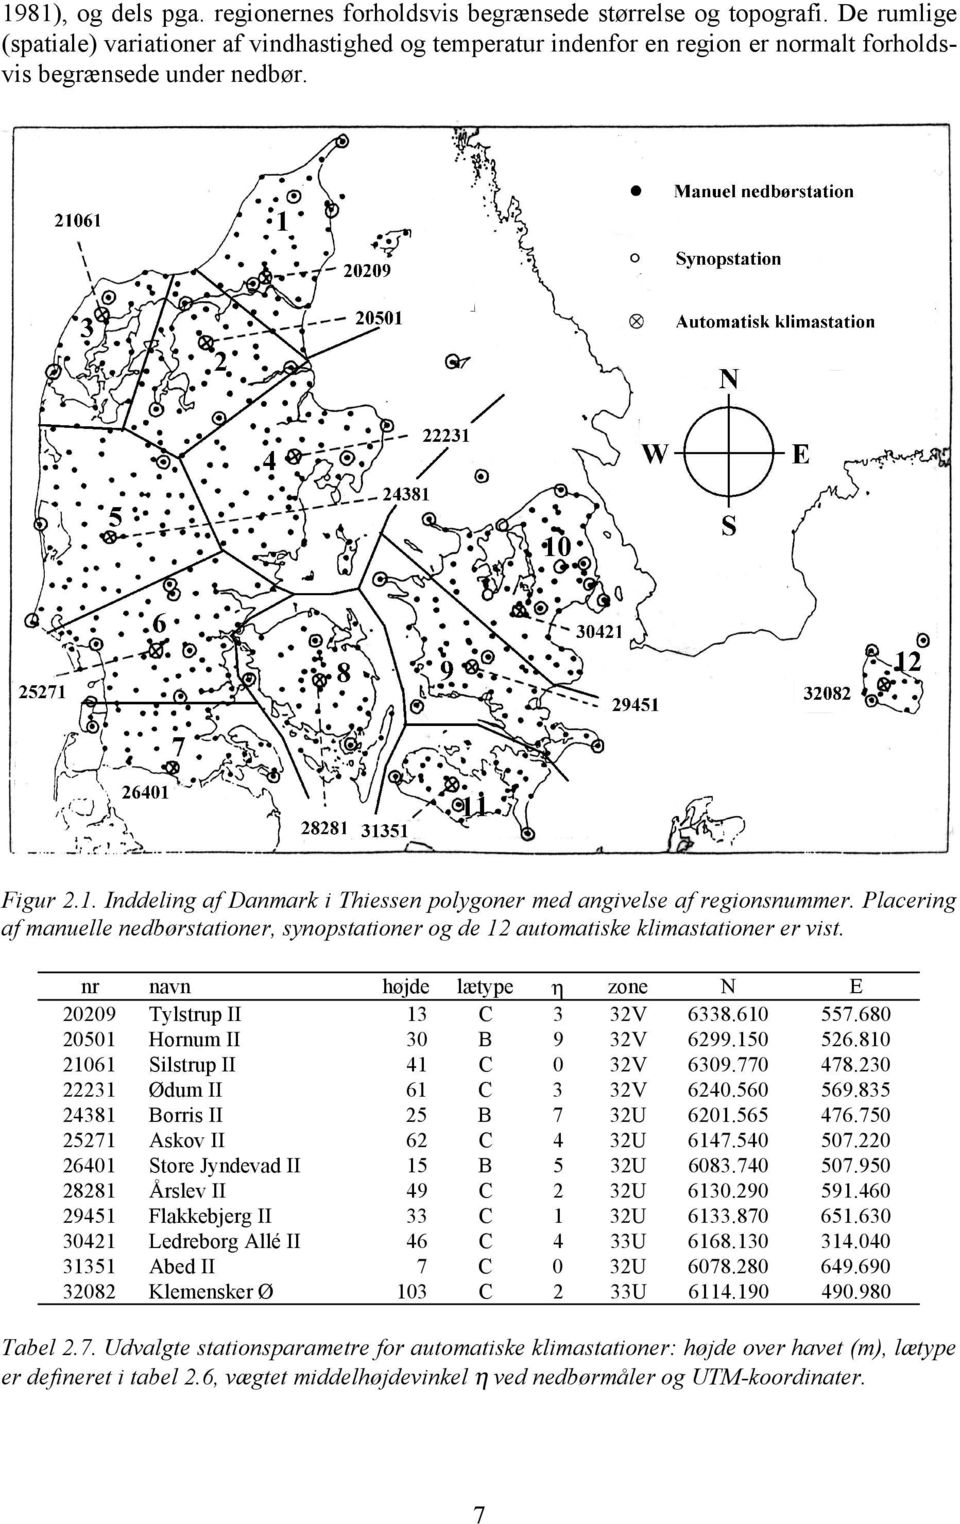 Inddeling af Danmark i Thiessen polygoner med angivelse af regionsnummer. Placering af manuelle nedbørstationer, synopstationer og de 12 automatiske klimastationer er vist.